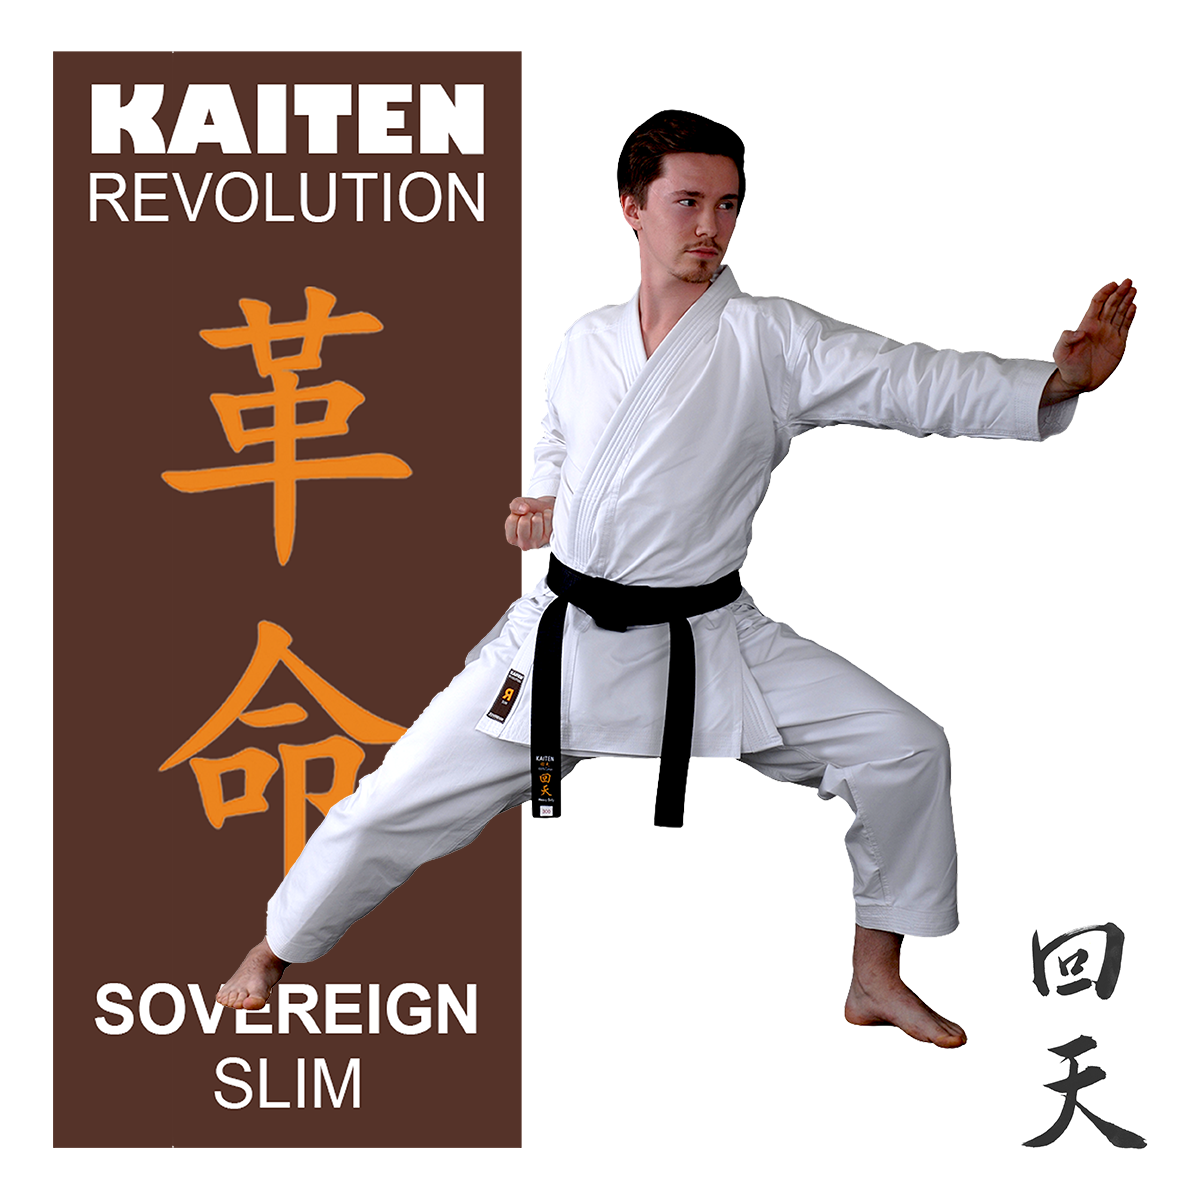 KAITEN Karateanzug REVOLUTION Sovereign SLIM von KAITEN